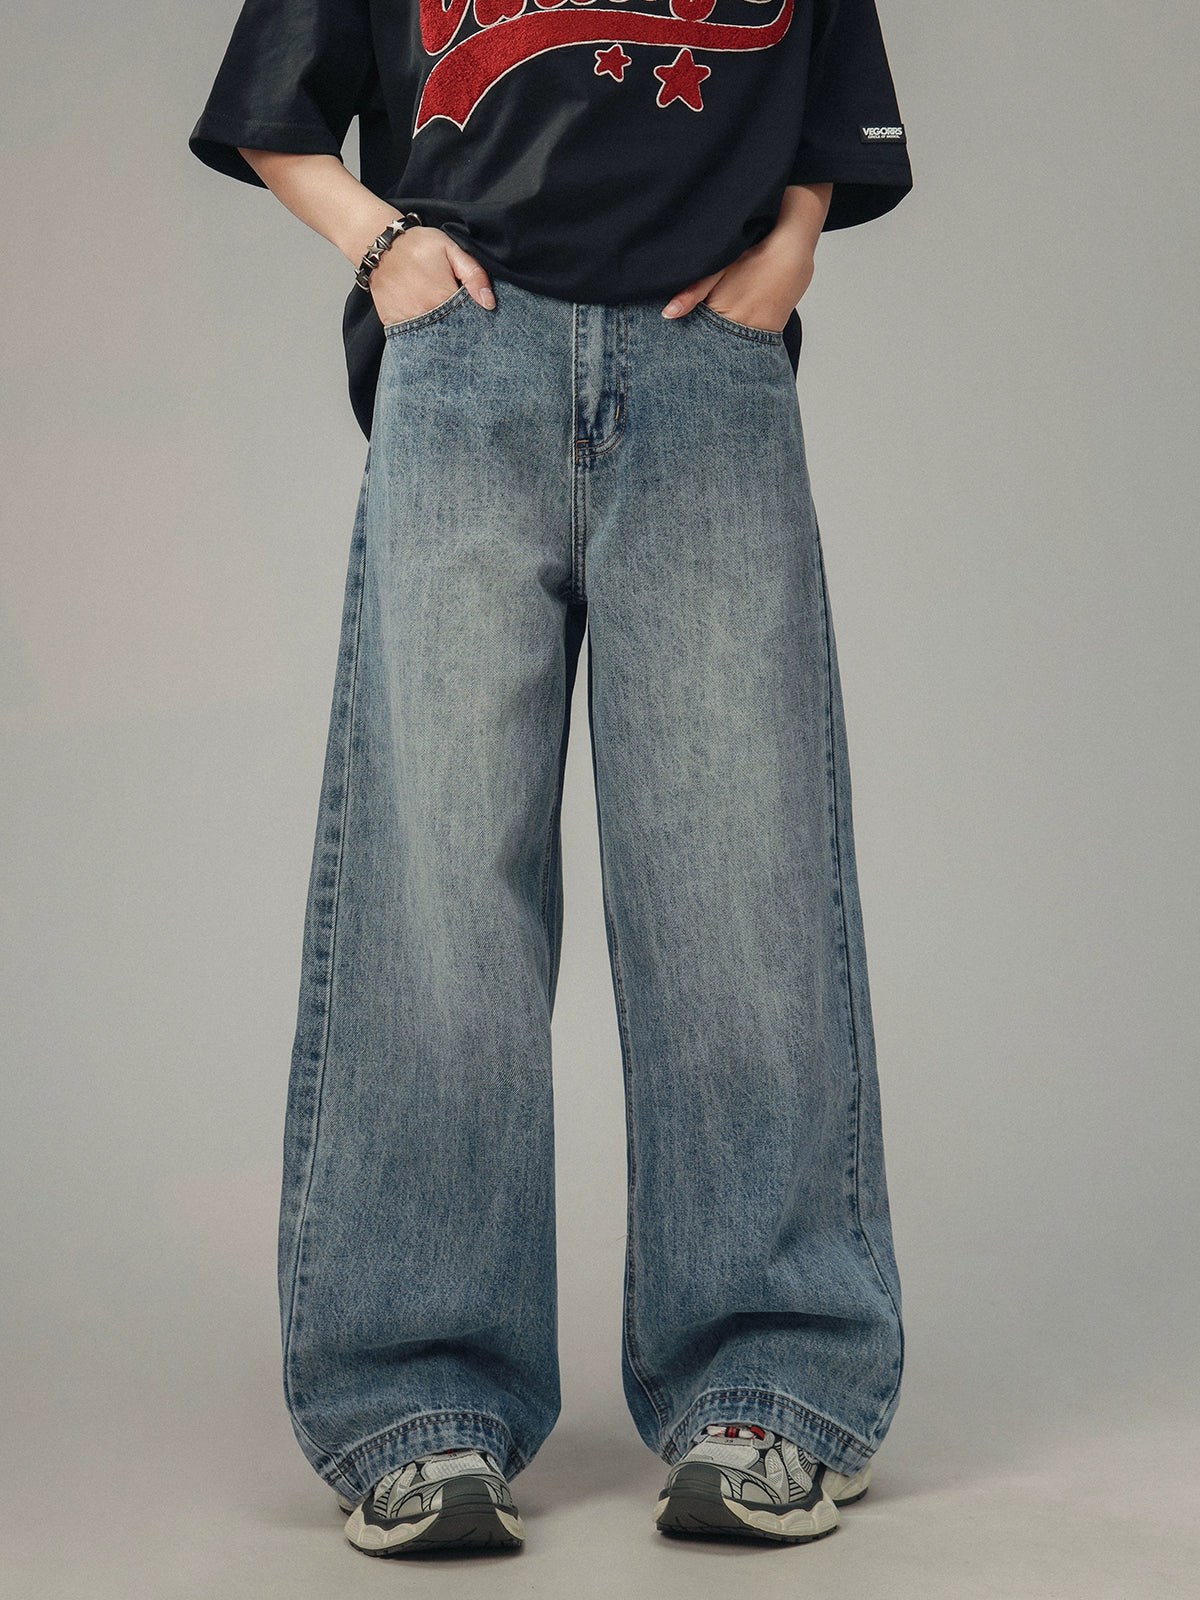 Amerikanische Retro Drape Jeans Gerade Hose